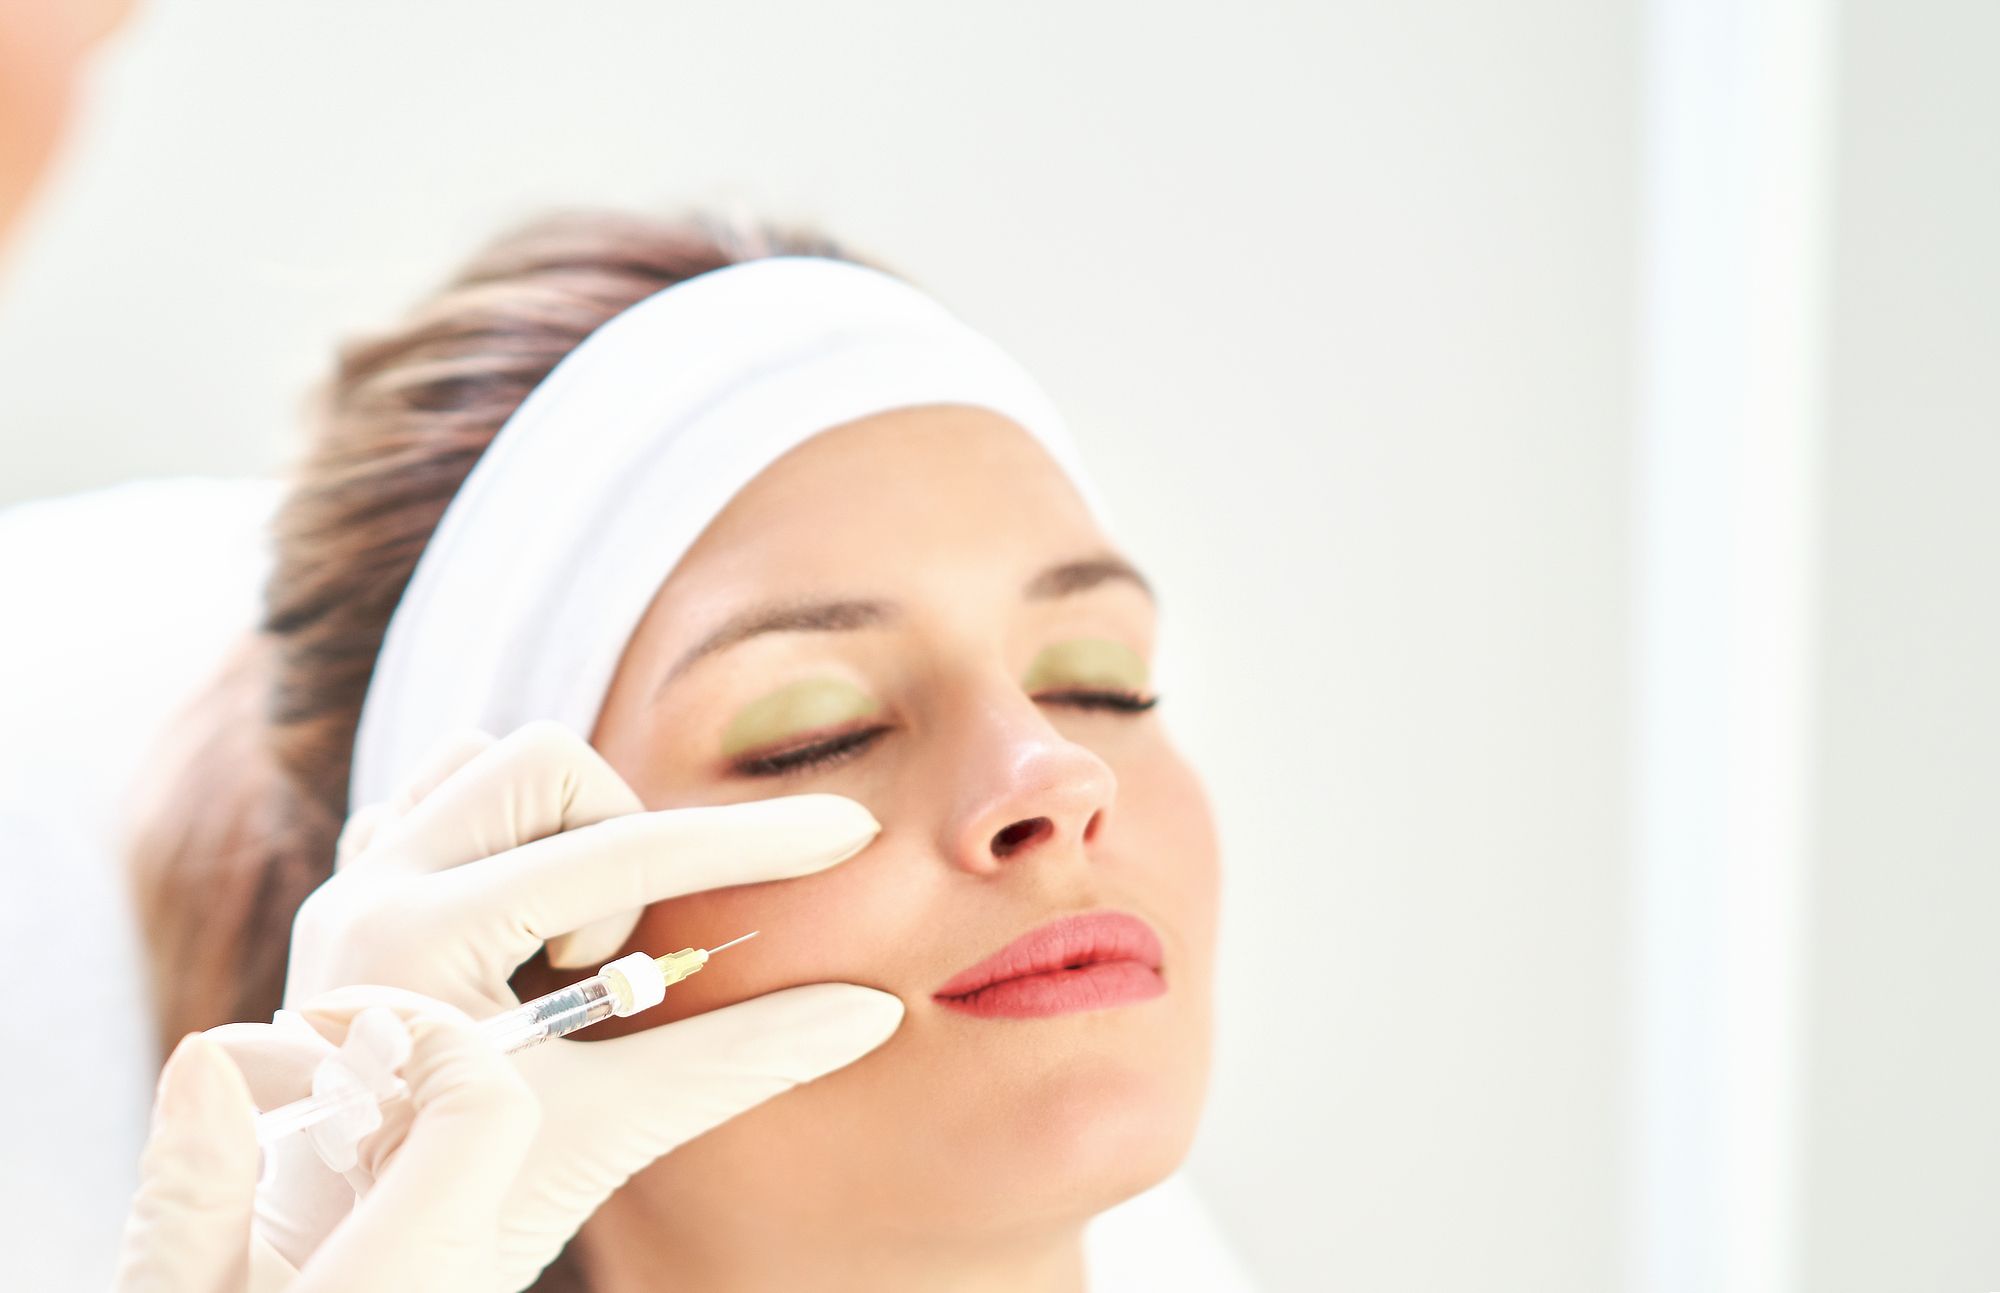 Donna che si sottopone a biorivitalizzazione viso mediante iniezione di acido ialuronico nella pelle di una guancia